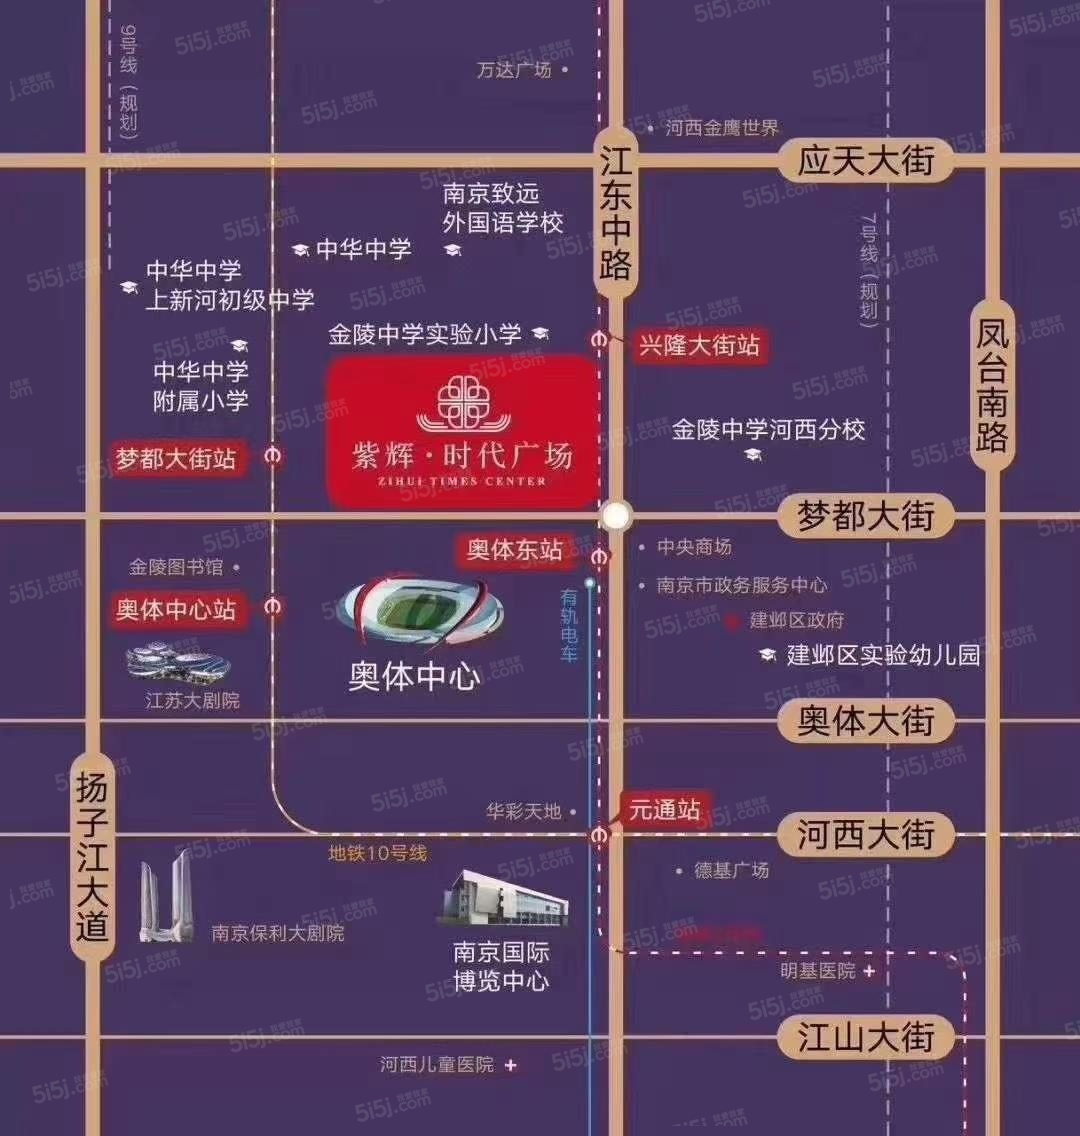 紫辉时代广场区位图